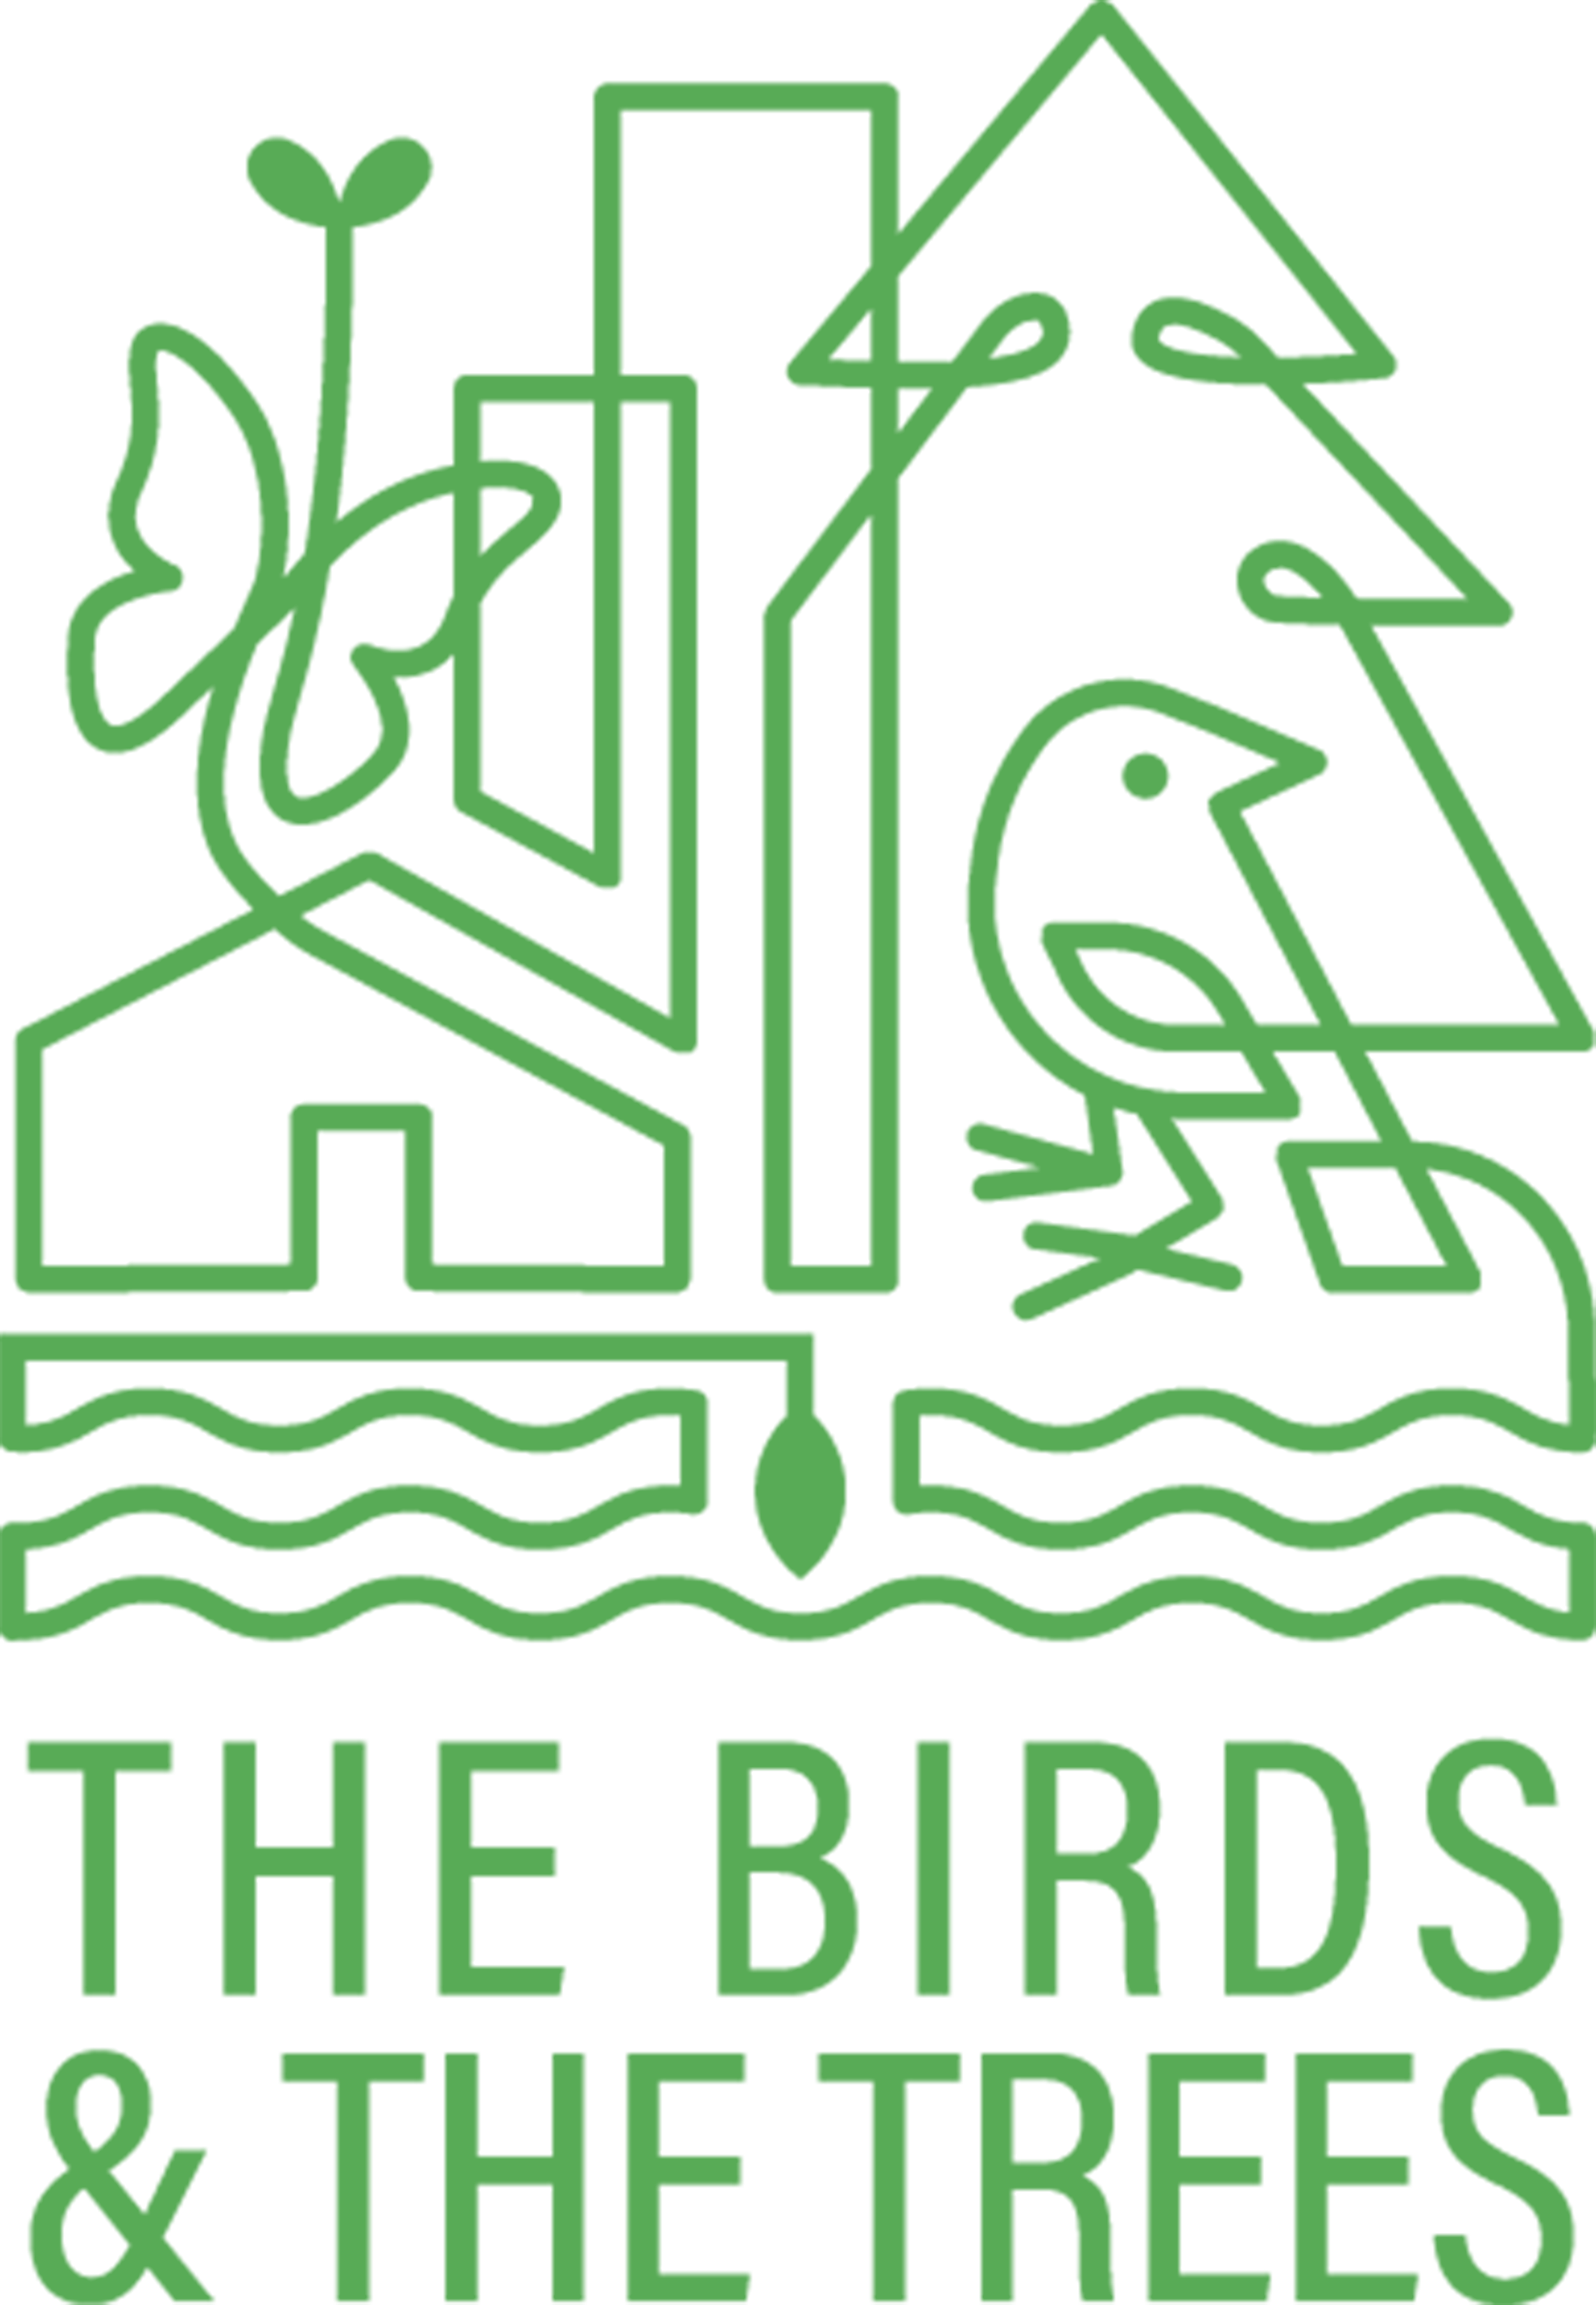 BirdsandTrees-Logo_Vertical-Green.png